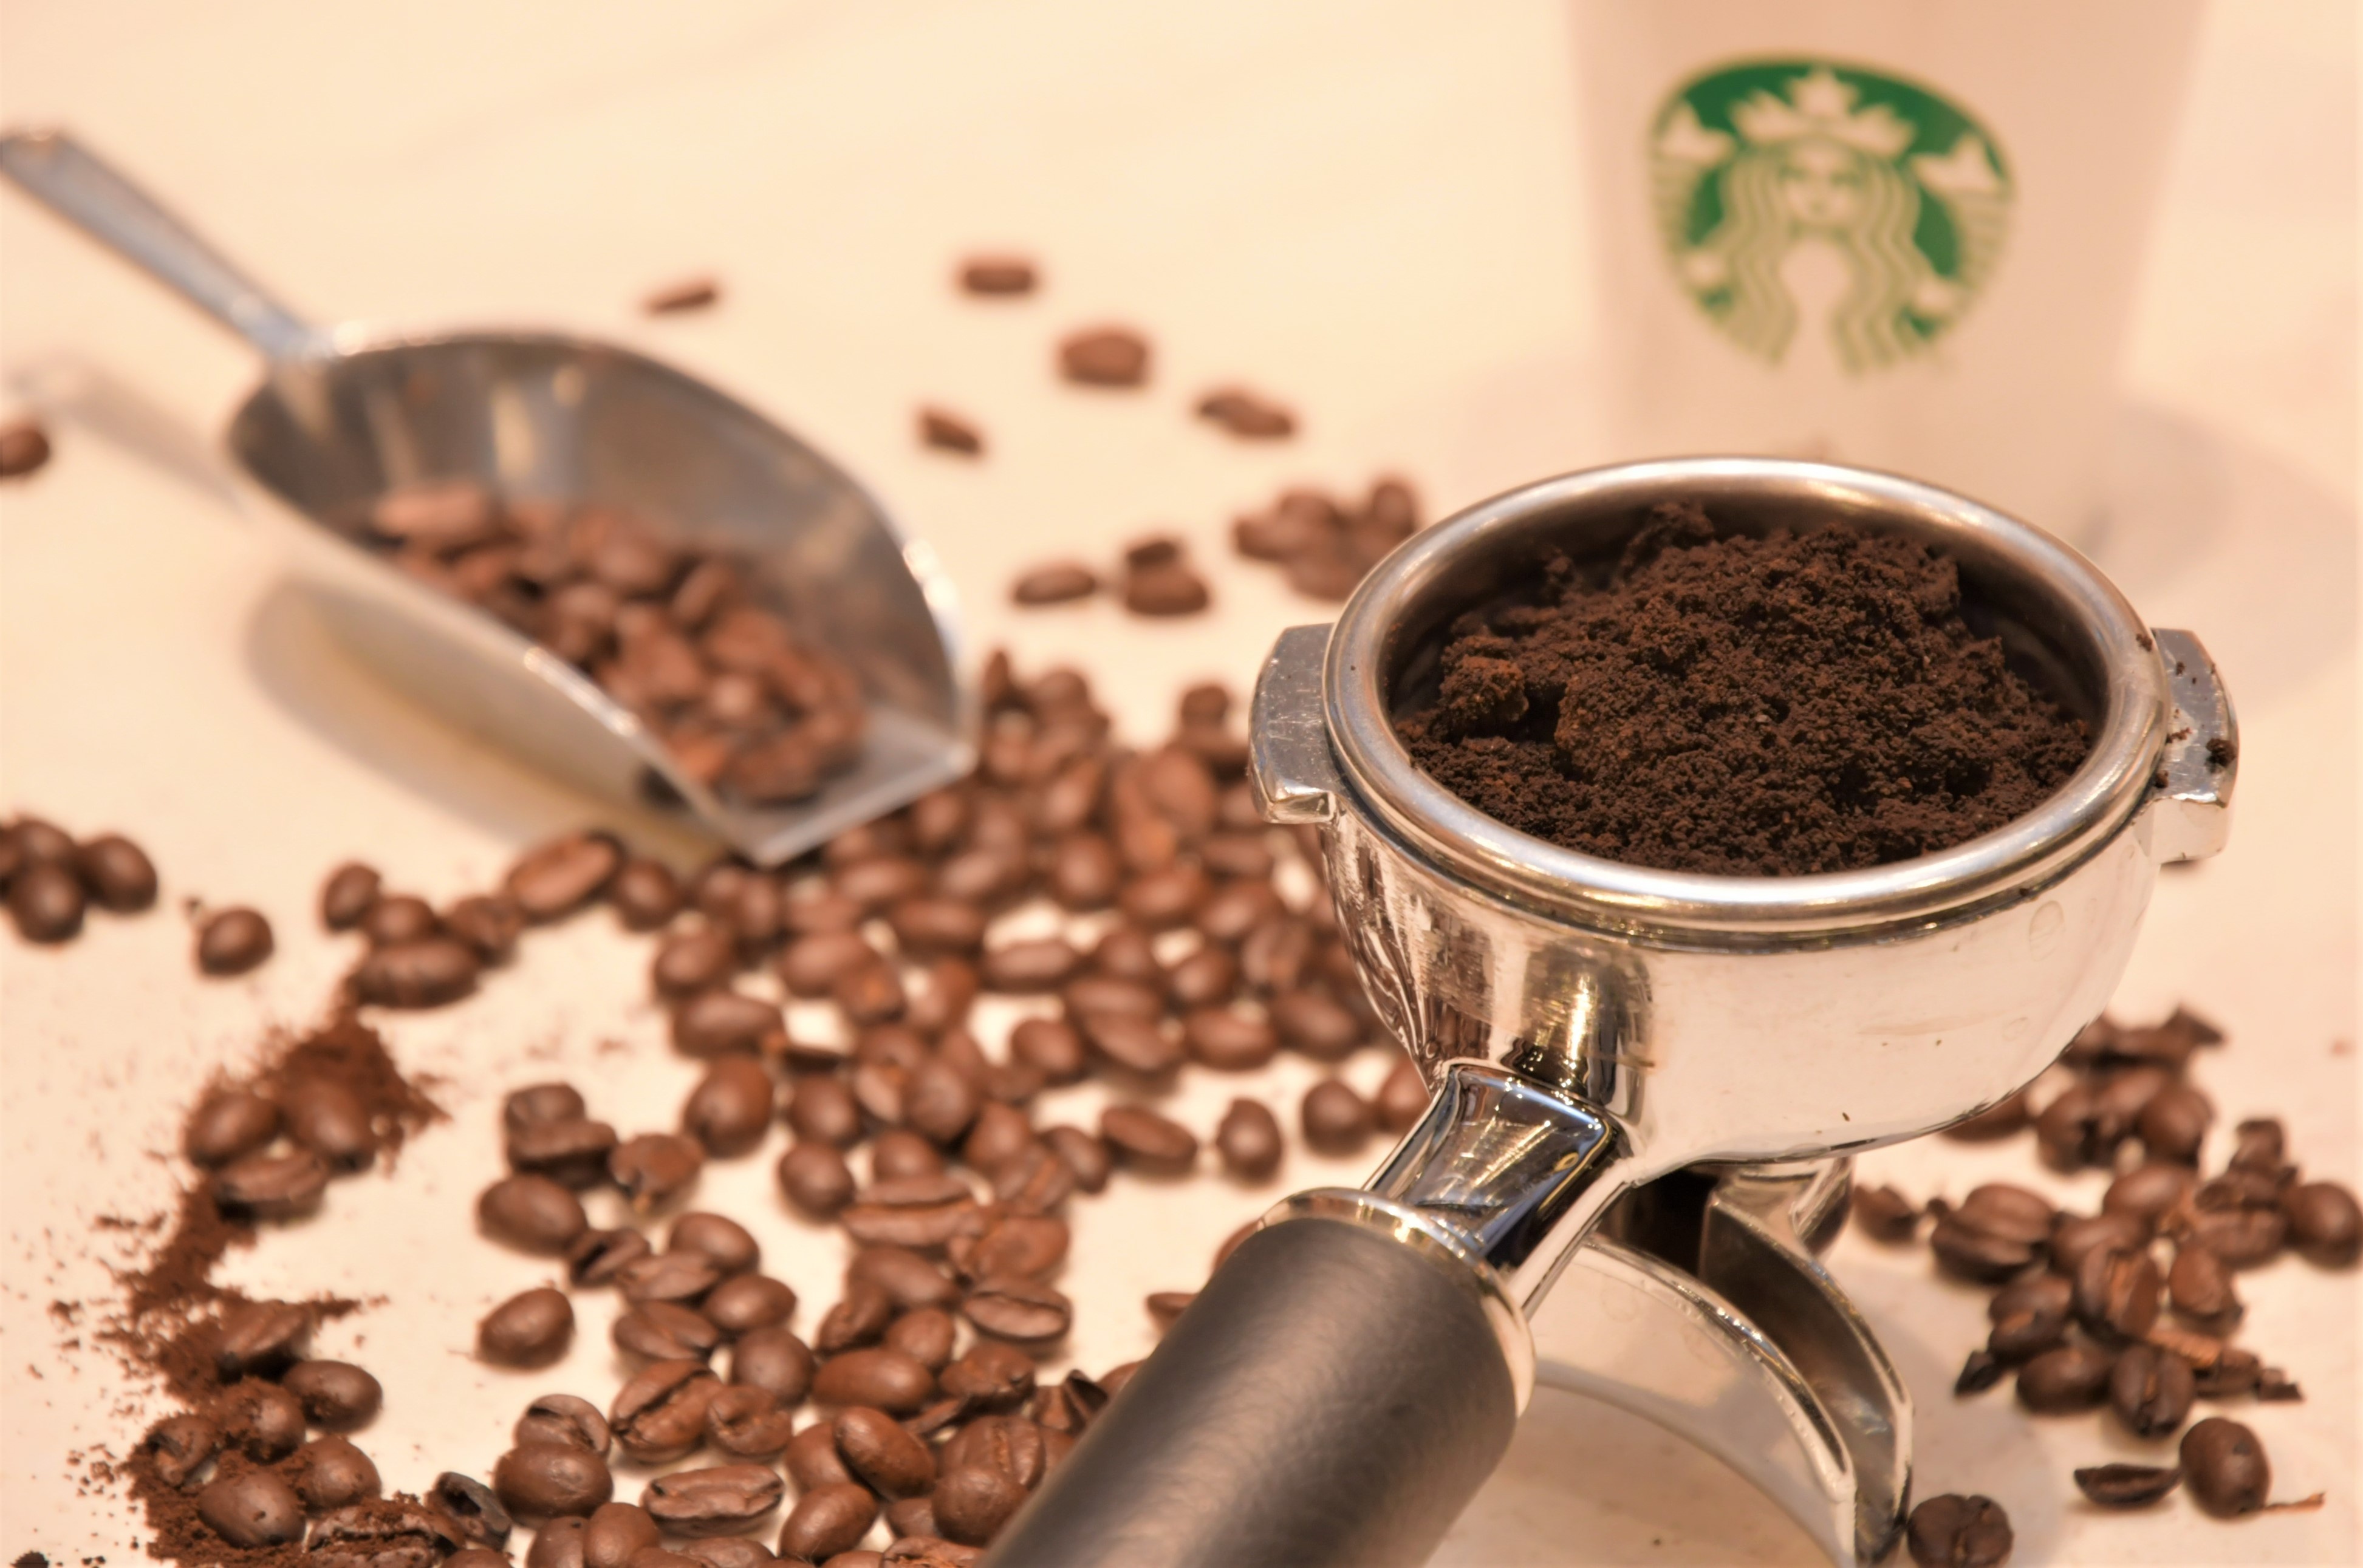 コーヒーを淹れたときに豆かすはつきもの。スターバックスではただ廃棄するのではなく、たい肥にすることで良い循環を作ろうとしている